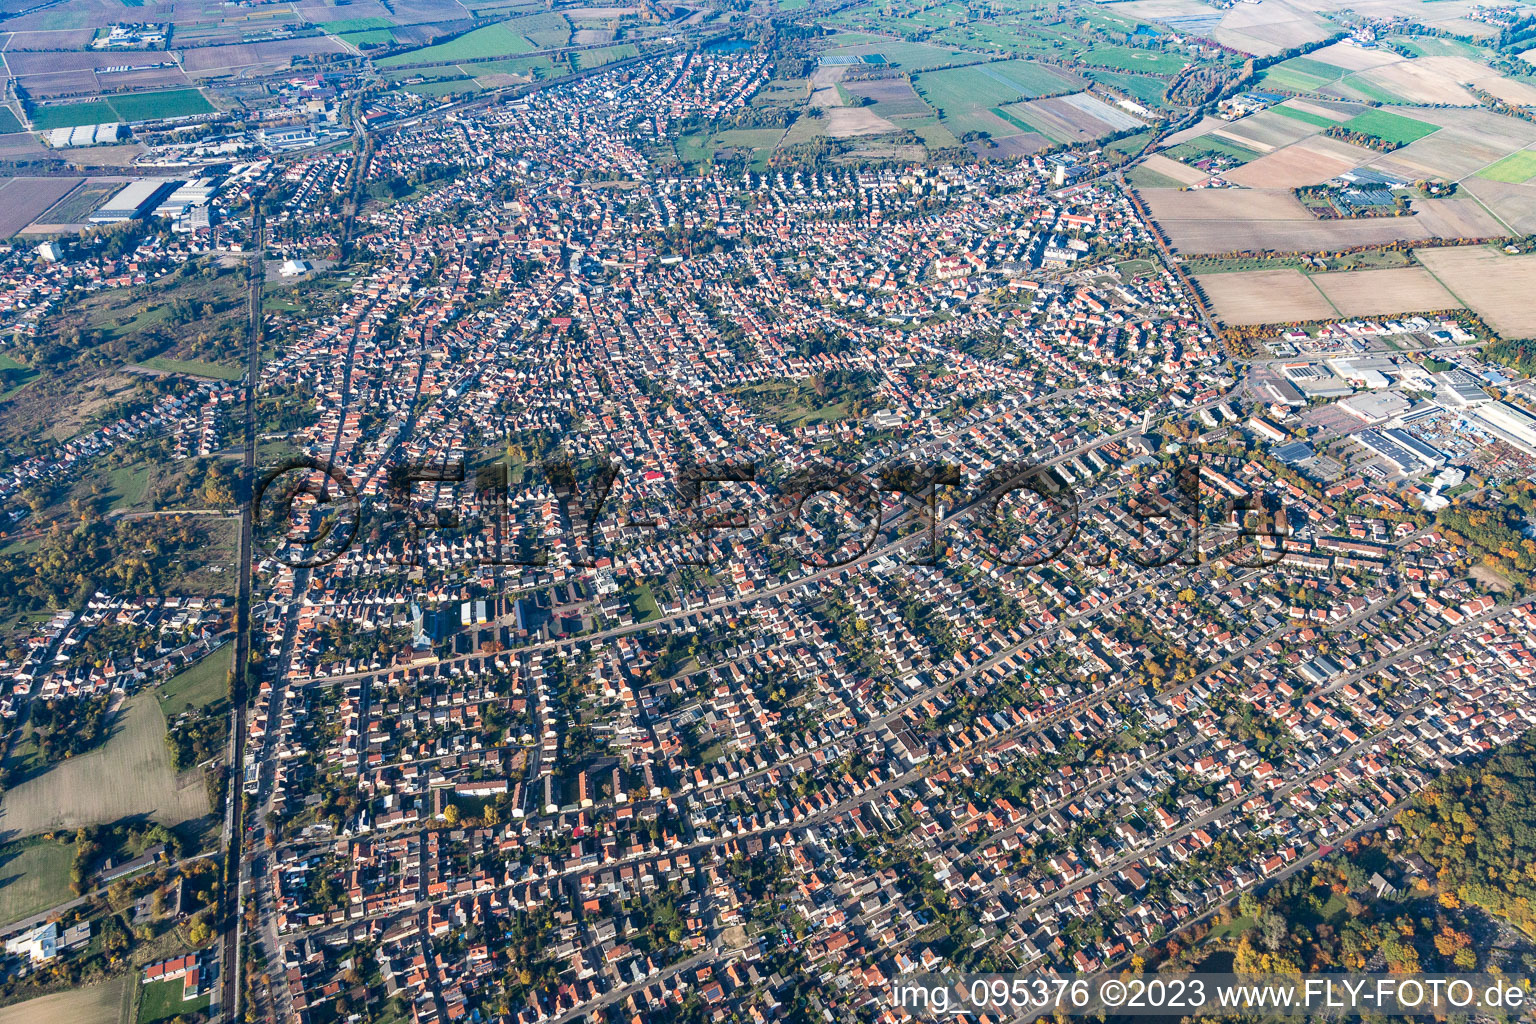 Schifferstadt im Bundesland Rheinland-Pfalz, Deutschland aus der Drohnenperspektive